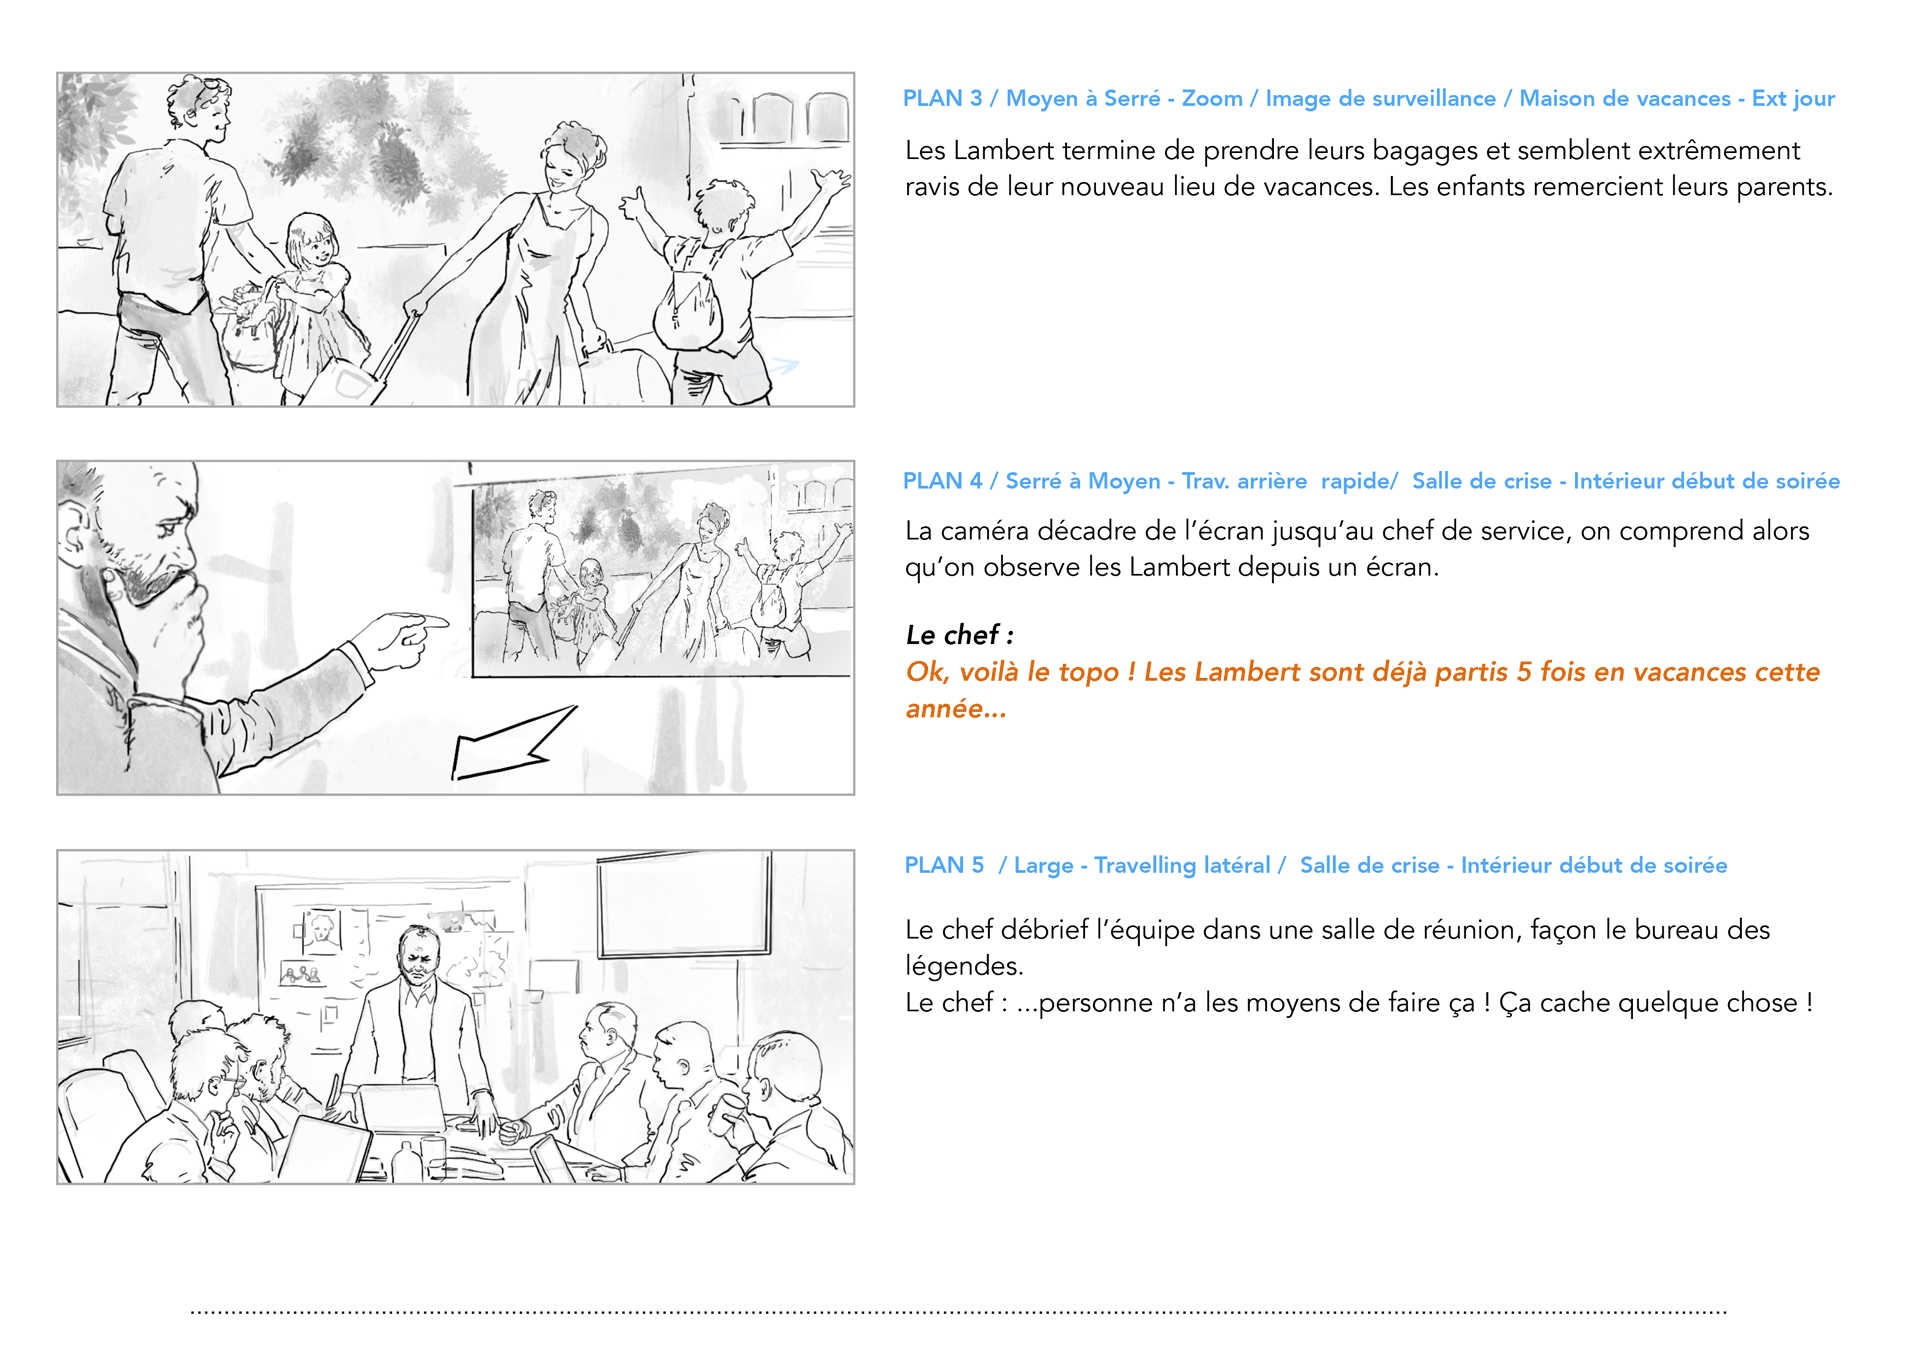 HomeExchange, Opération Lambert, storyboard, page 03